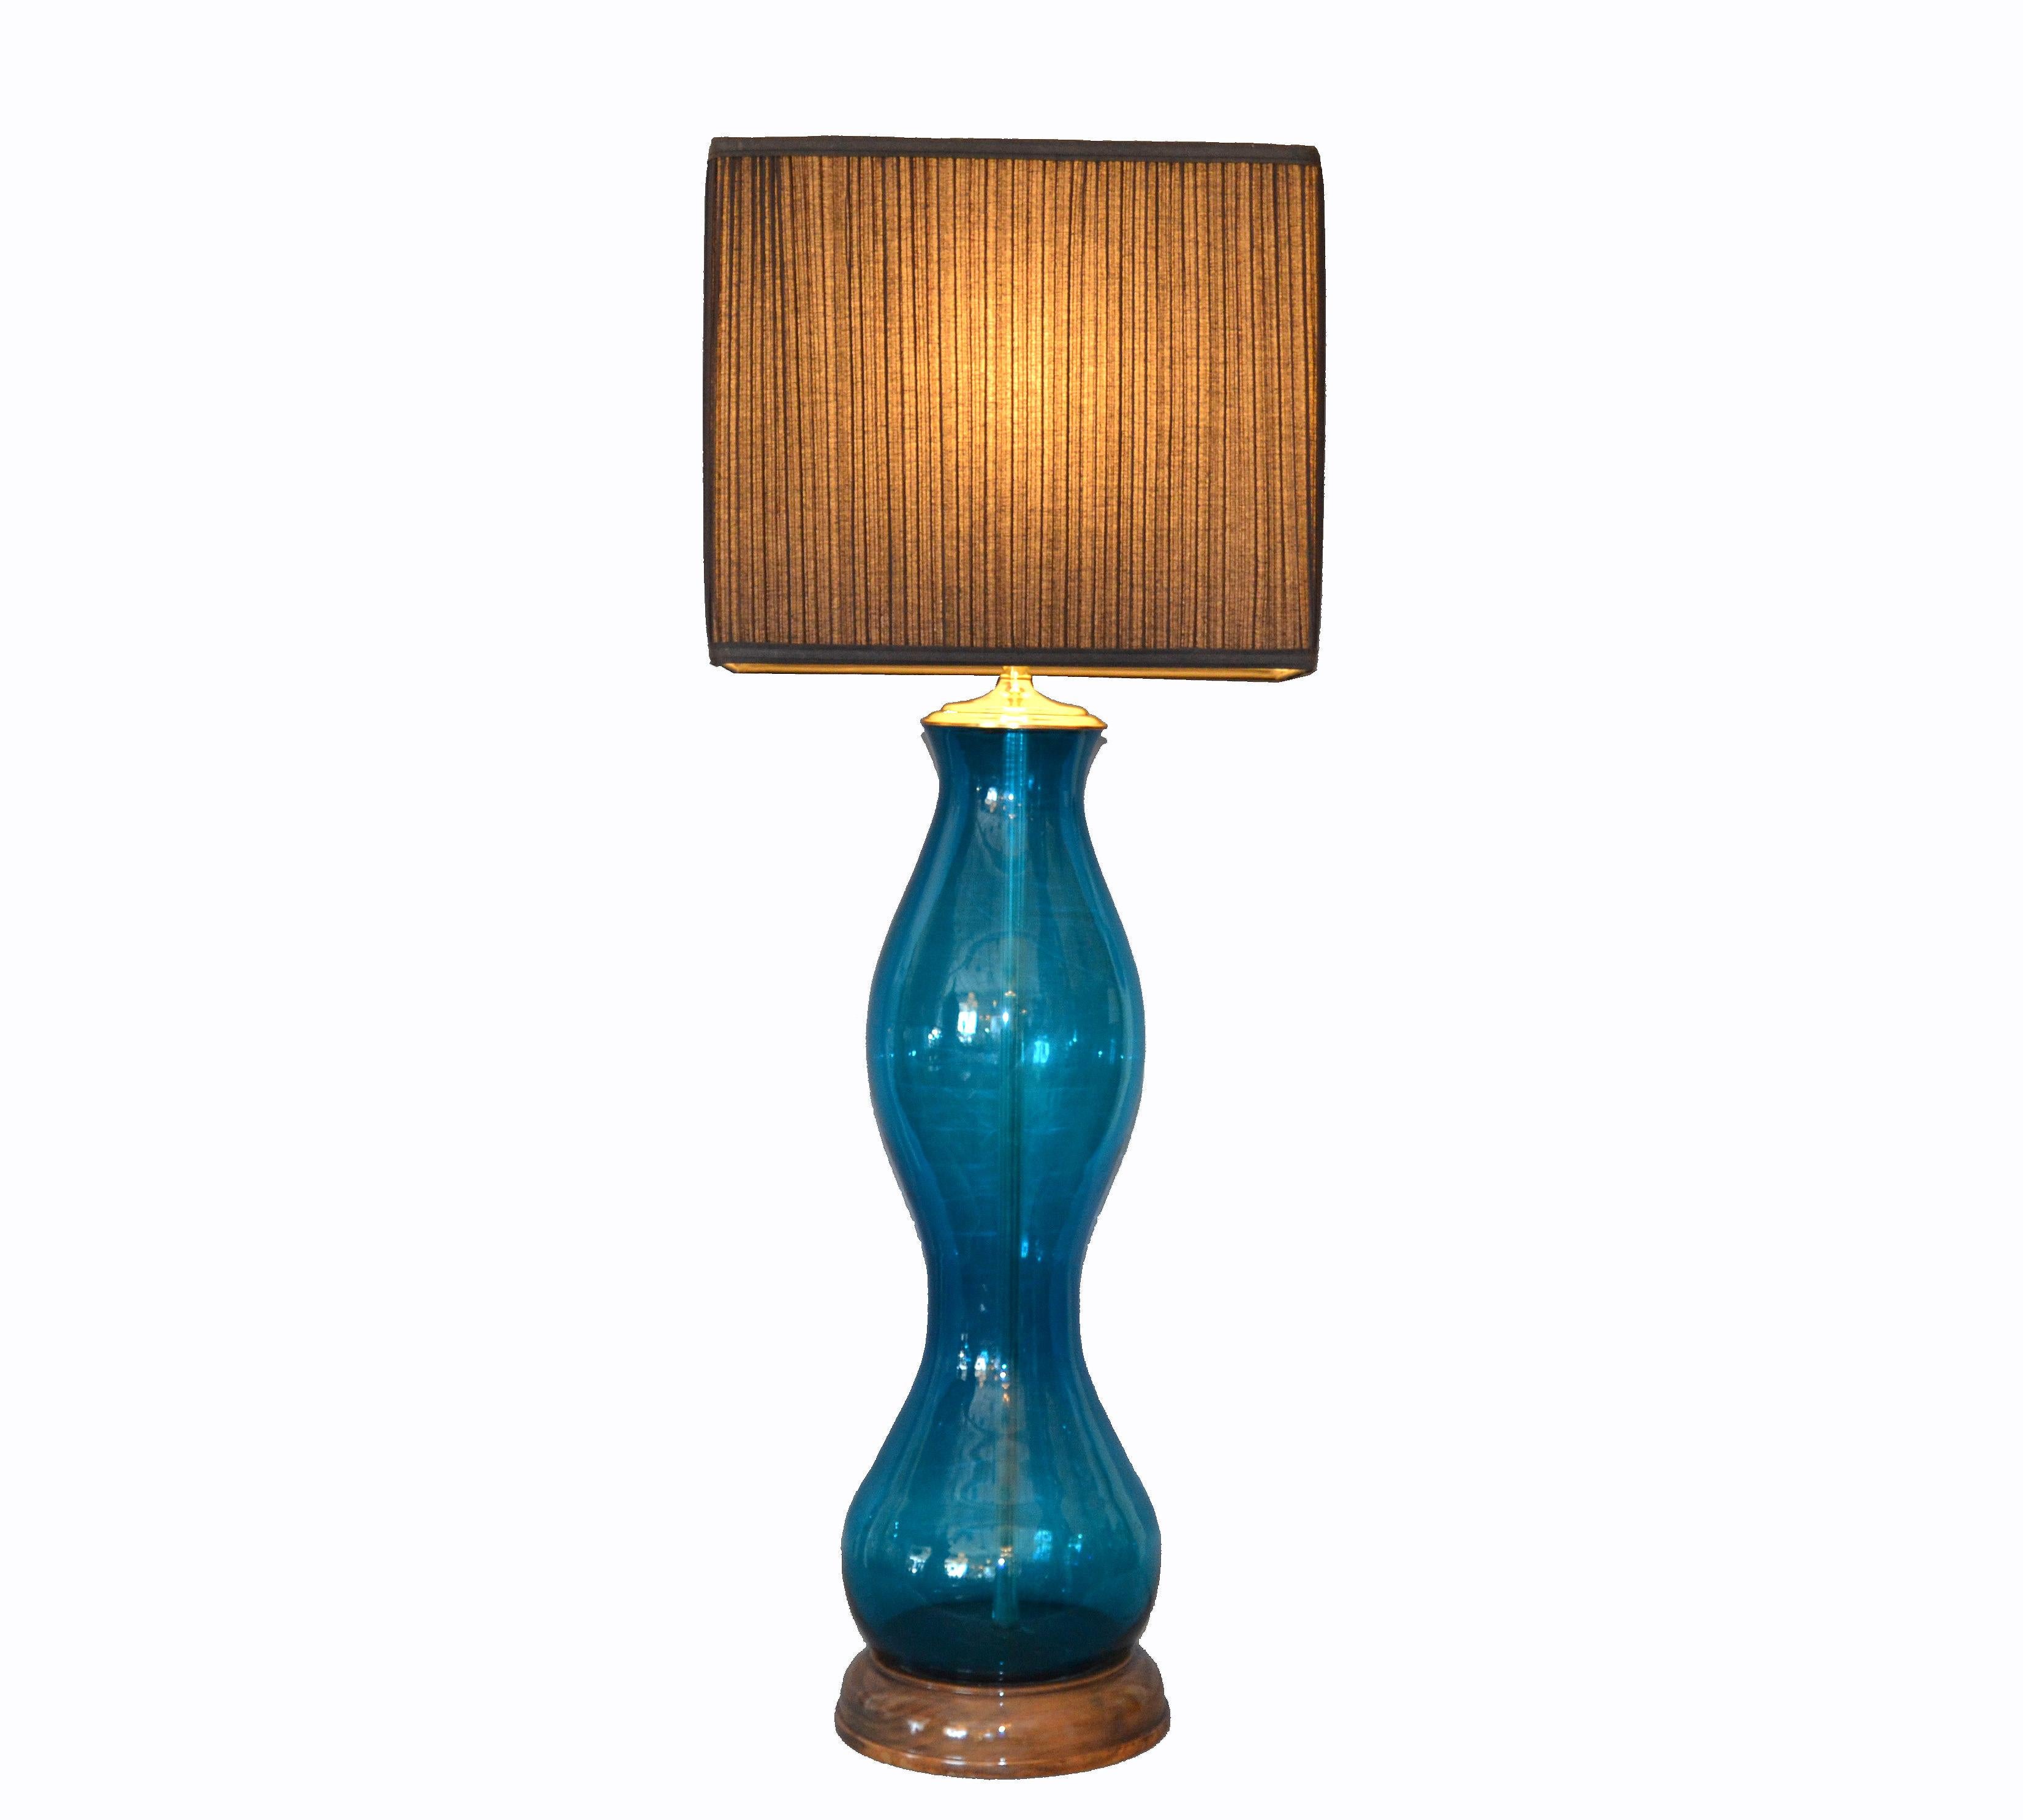 Original Tall Mid-century Modern Blue Hand Blown Art Glass Table Lamp by Blenko 1